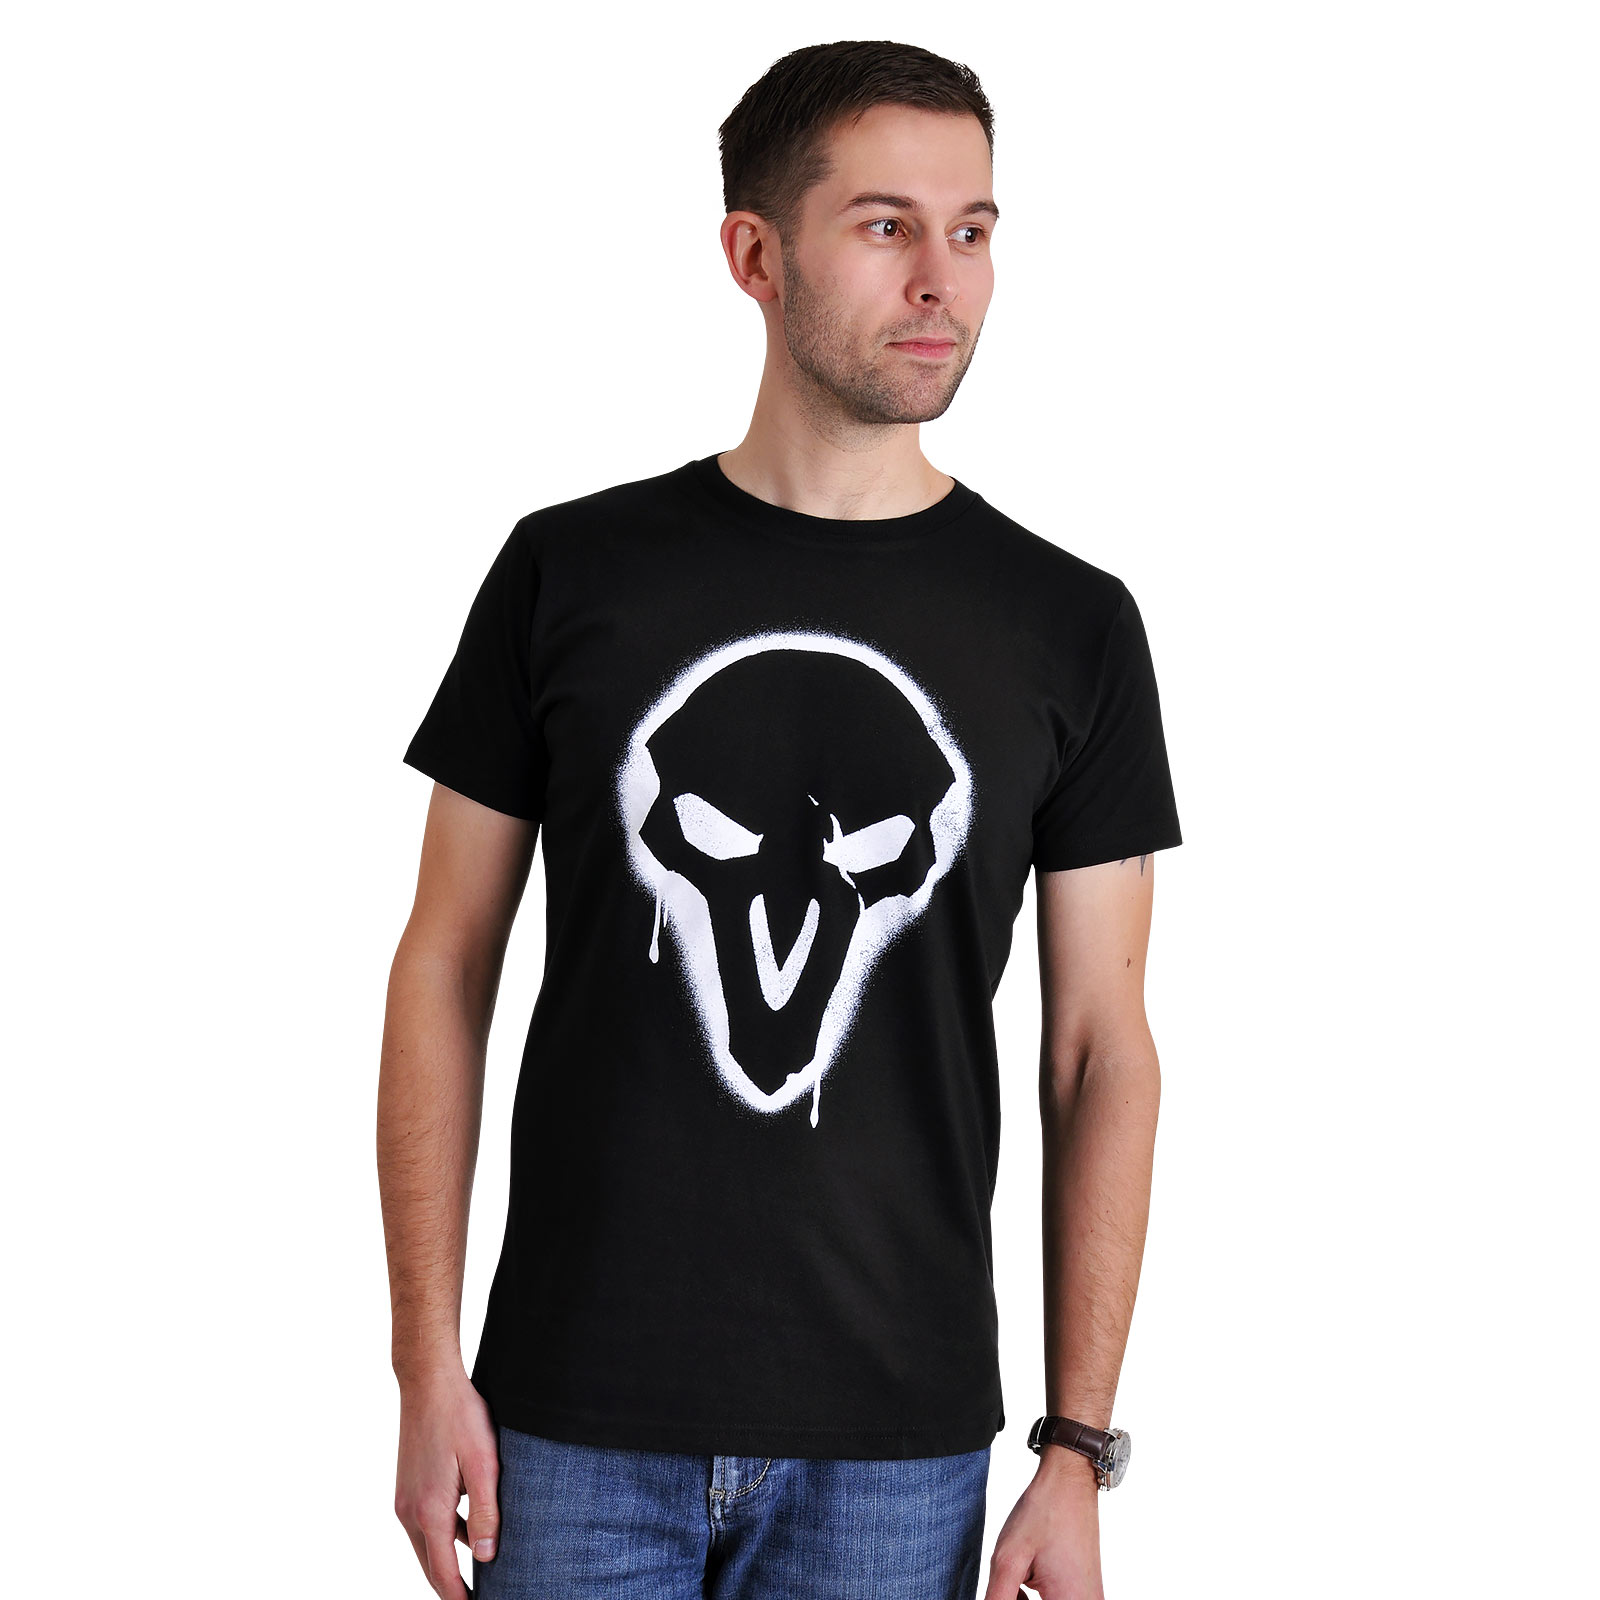 Overwatch - T-shirt noir avec logo Reaper Spray